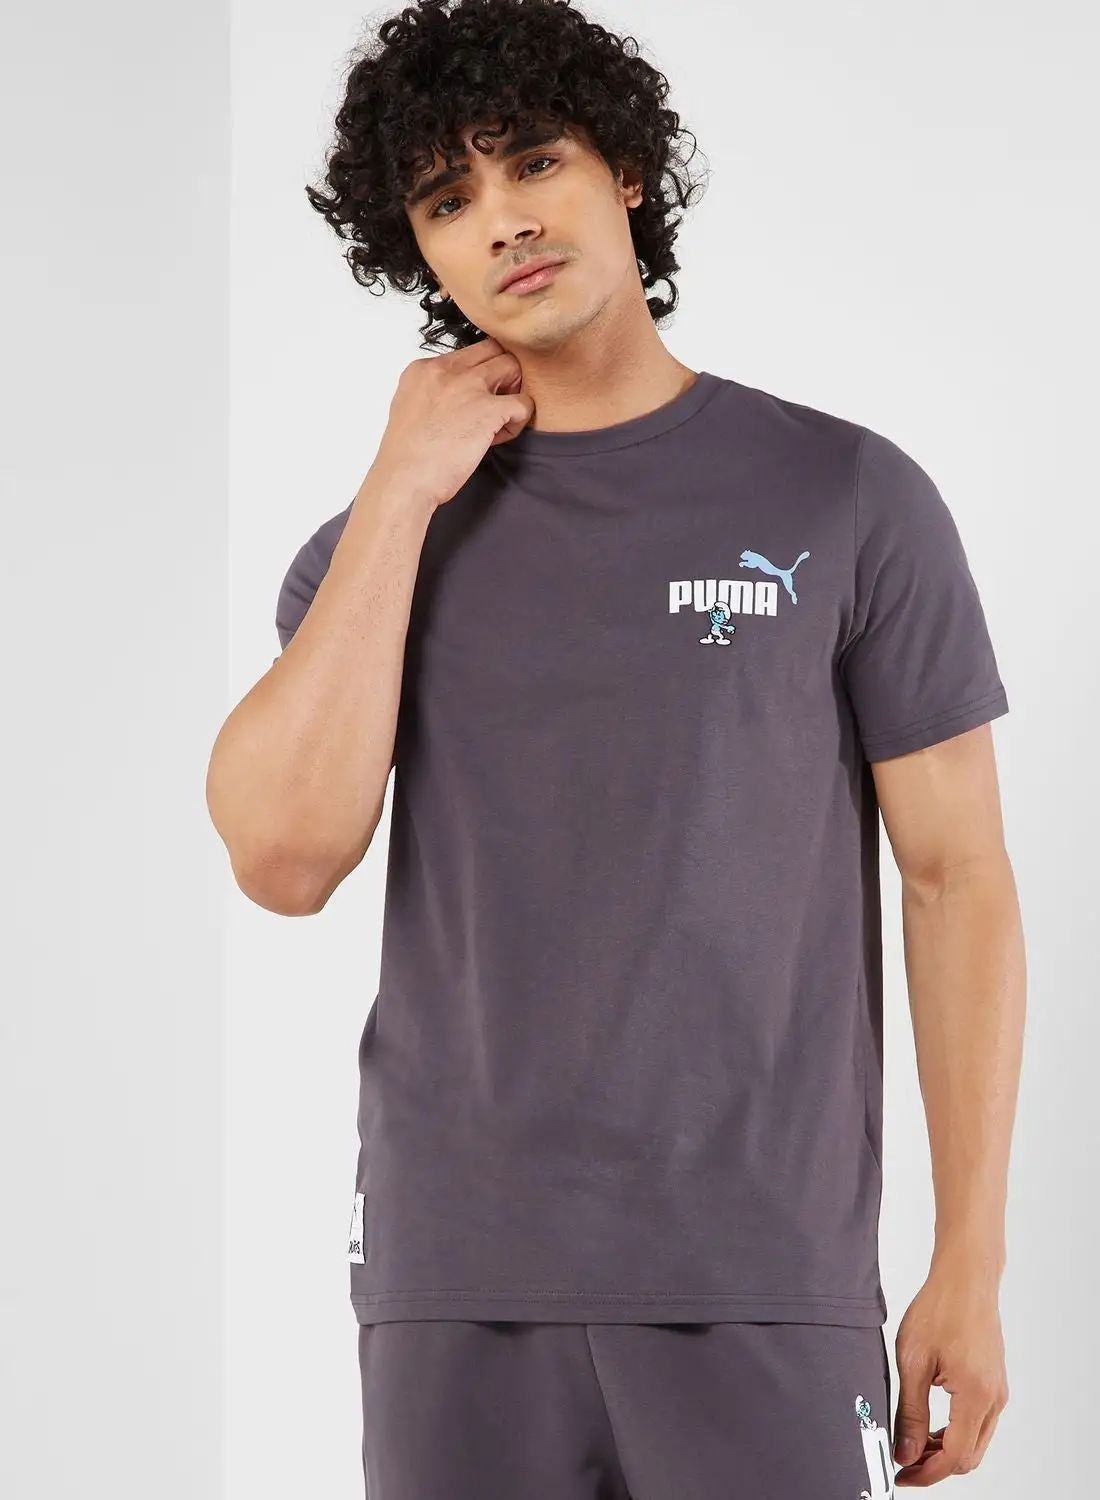 PUMA The Smurfs Graphic T-Shirt